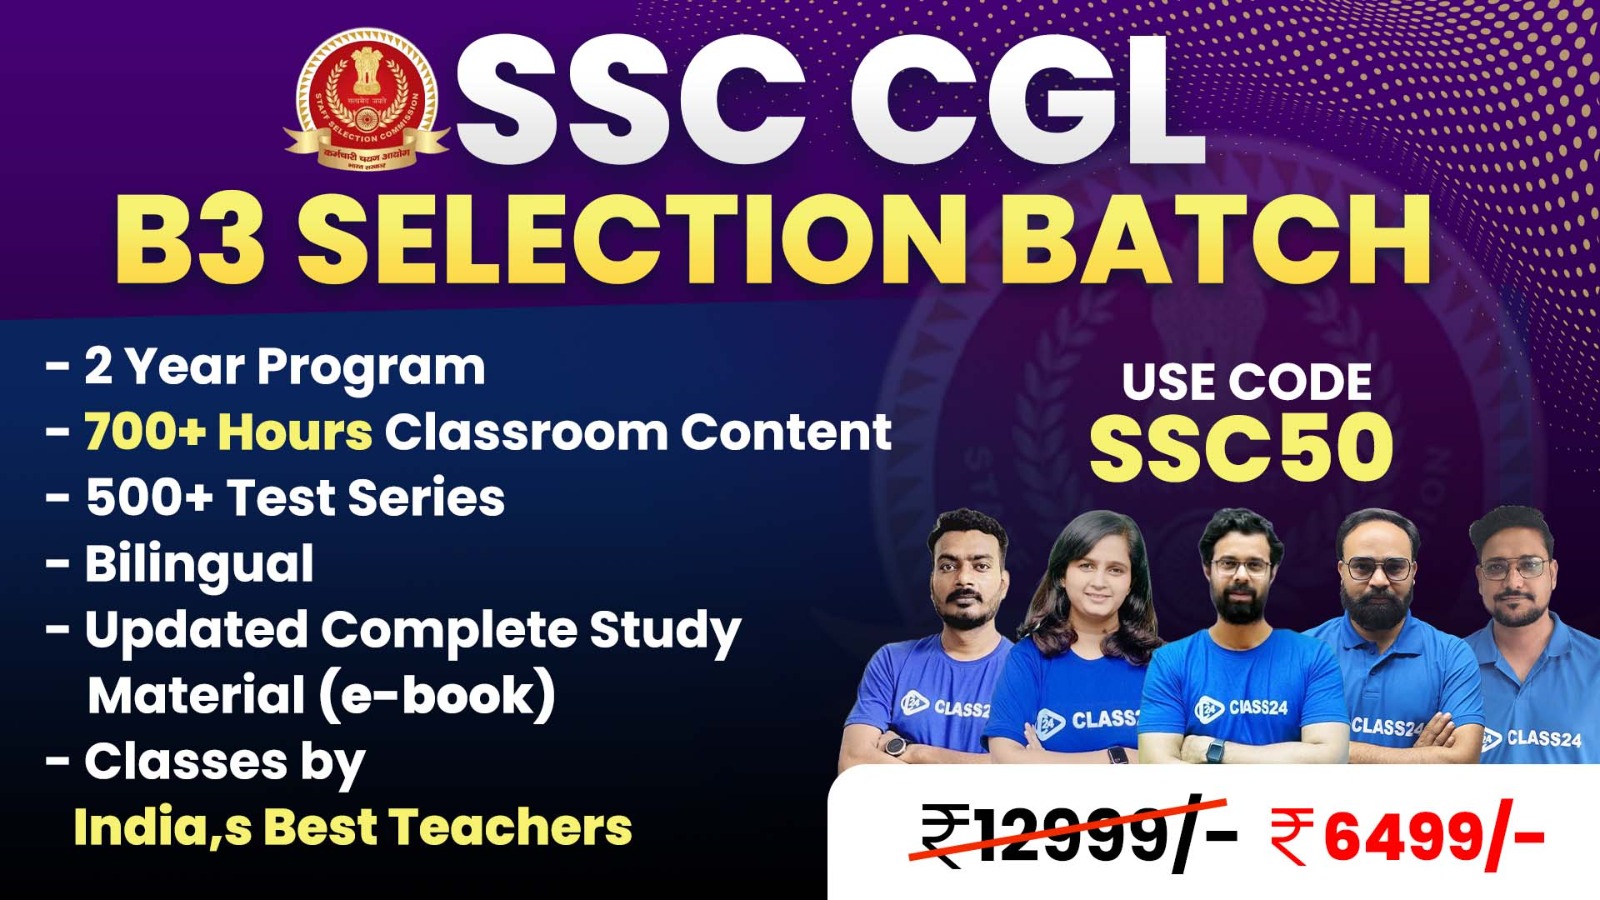 SSC CGL B3 Selection Batch